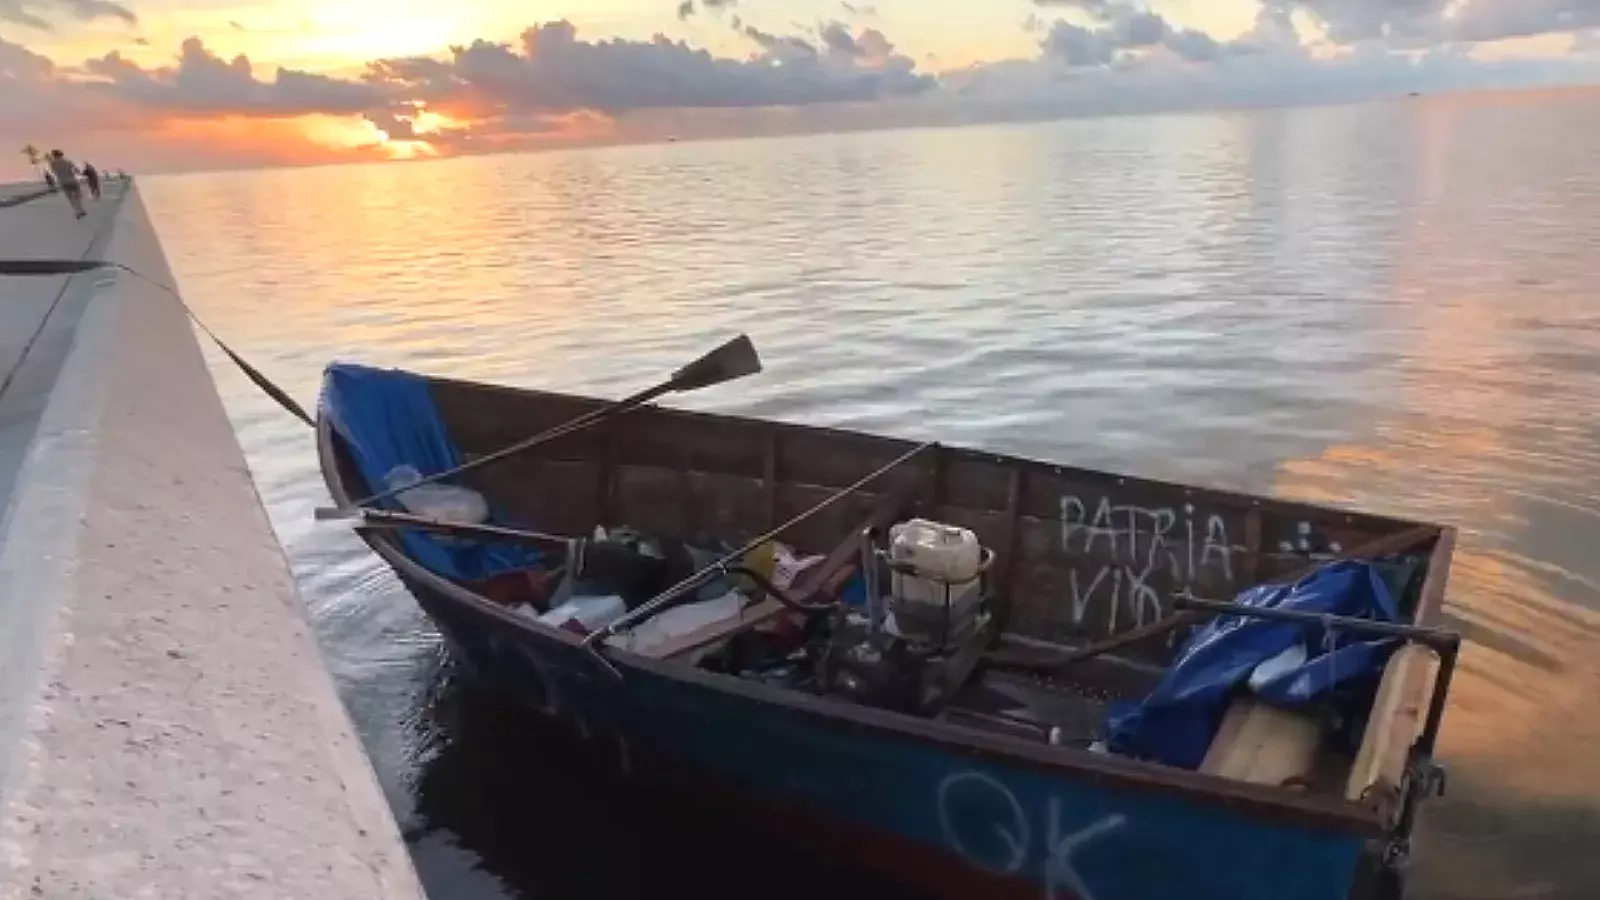 Desembarcan en Florida 21 cubanos en balsa con mensaje de “Patria y Vida”